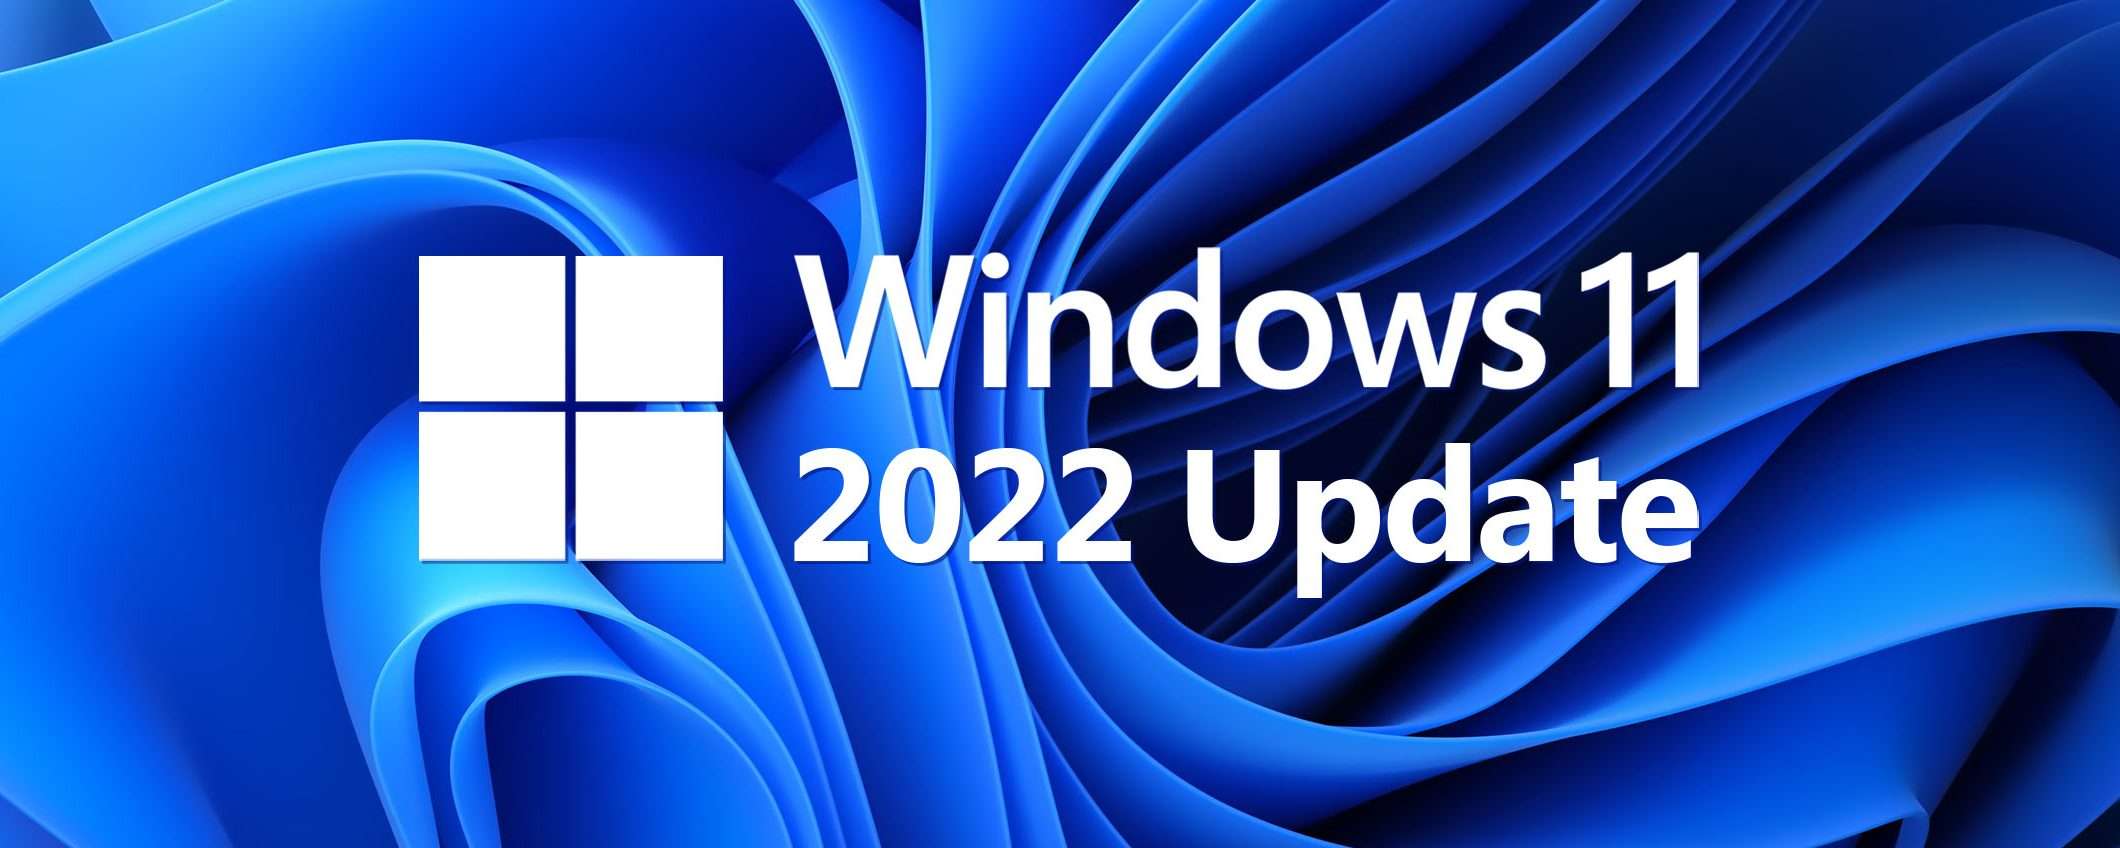 Windows 11 22H2: più sicurezza sulle VM con TME-MK